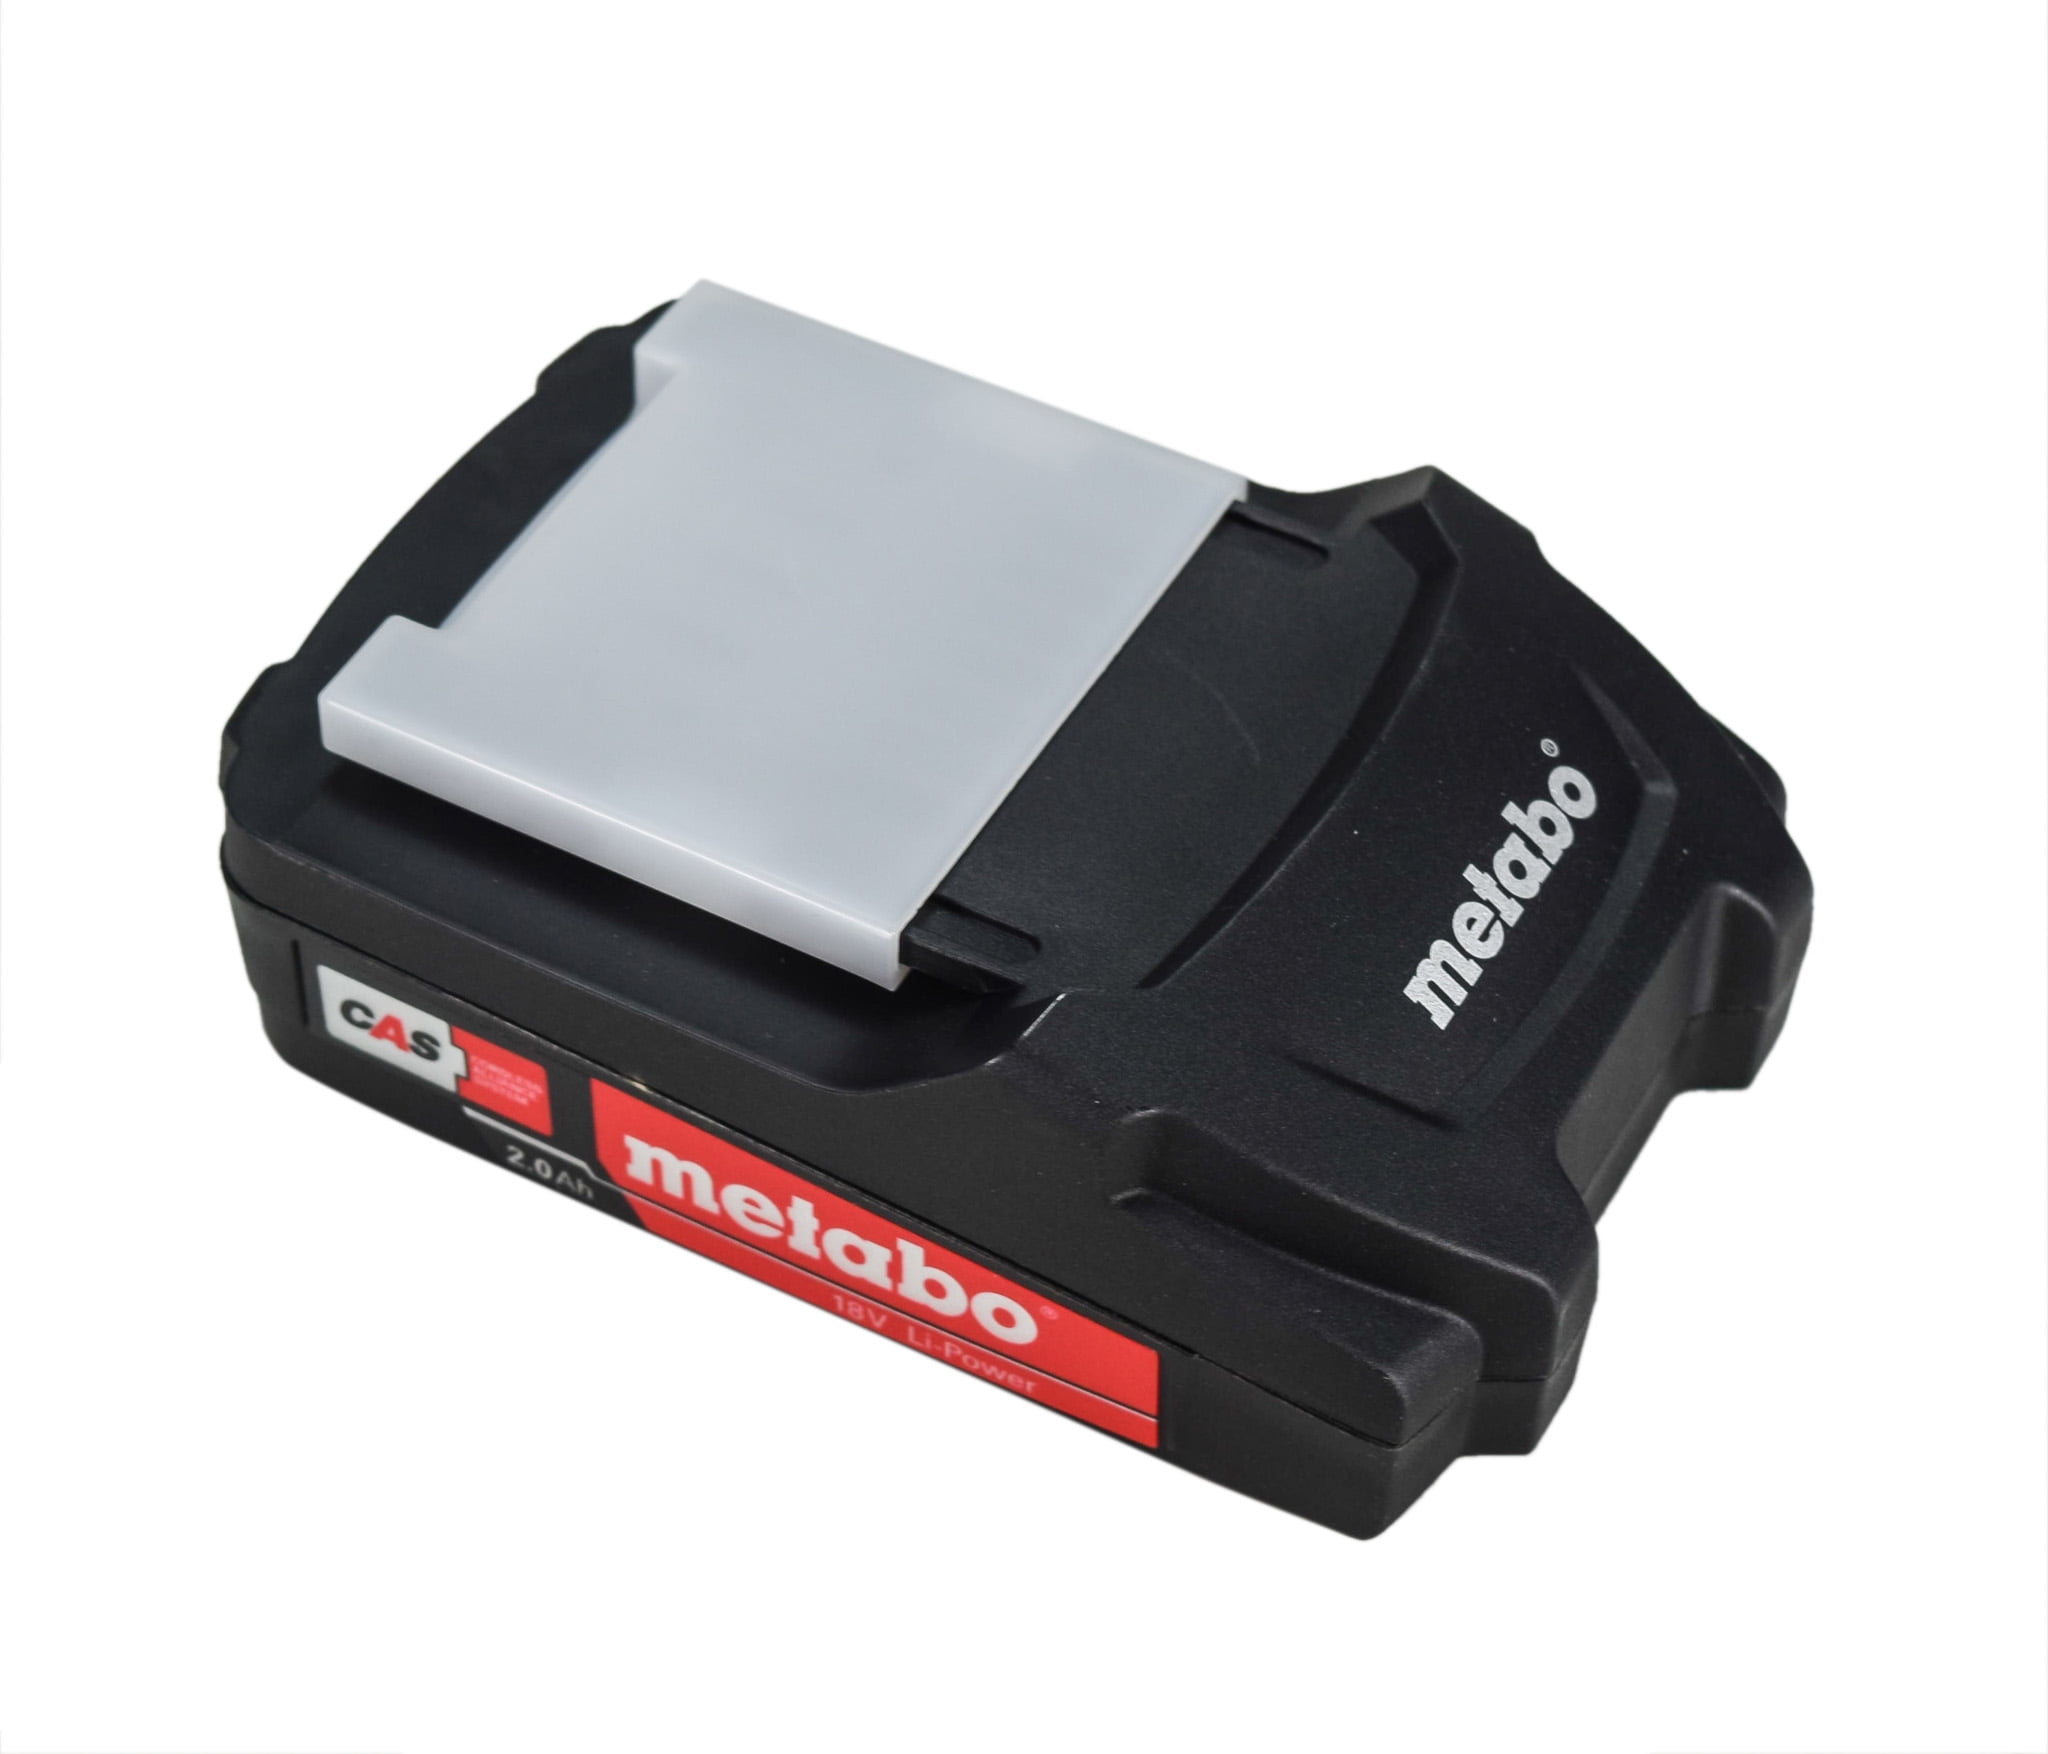 METABO Scie sauteuse sans fil 18V 2 batteries 5,2Ah en coffret - 601002650